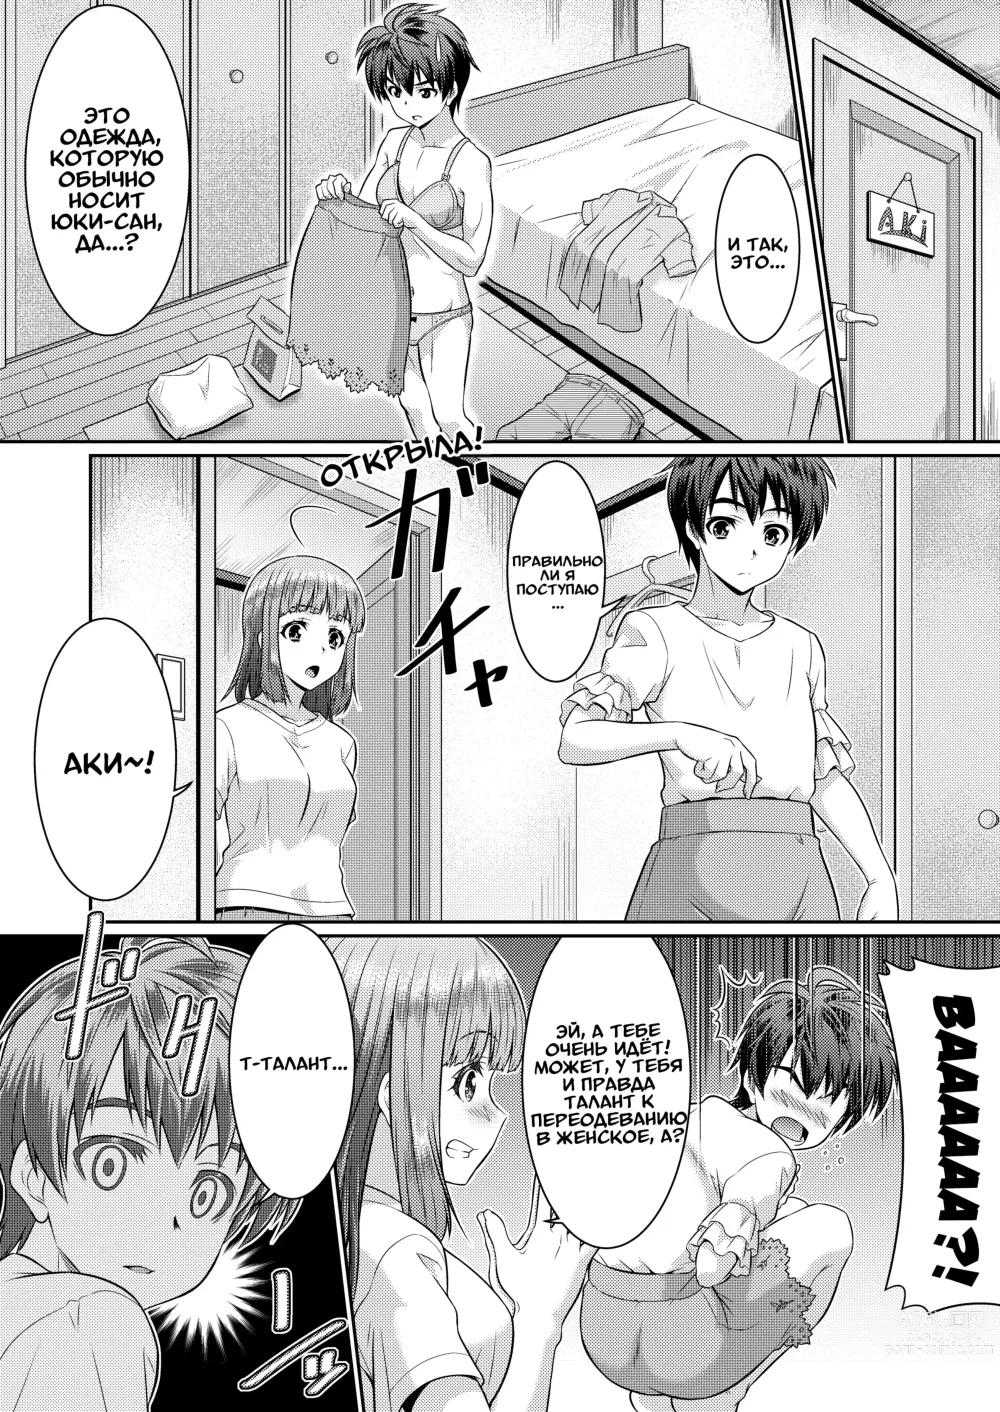 Page 7 of doujinshi Метаморфозы 2 ★ ~Как я начал превращаться в девушек, в одежду которых переодевался